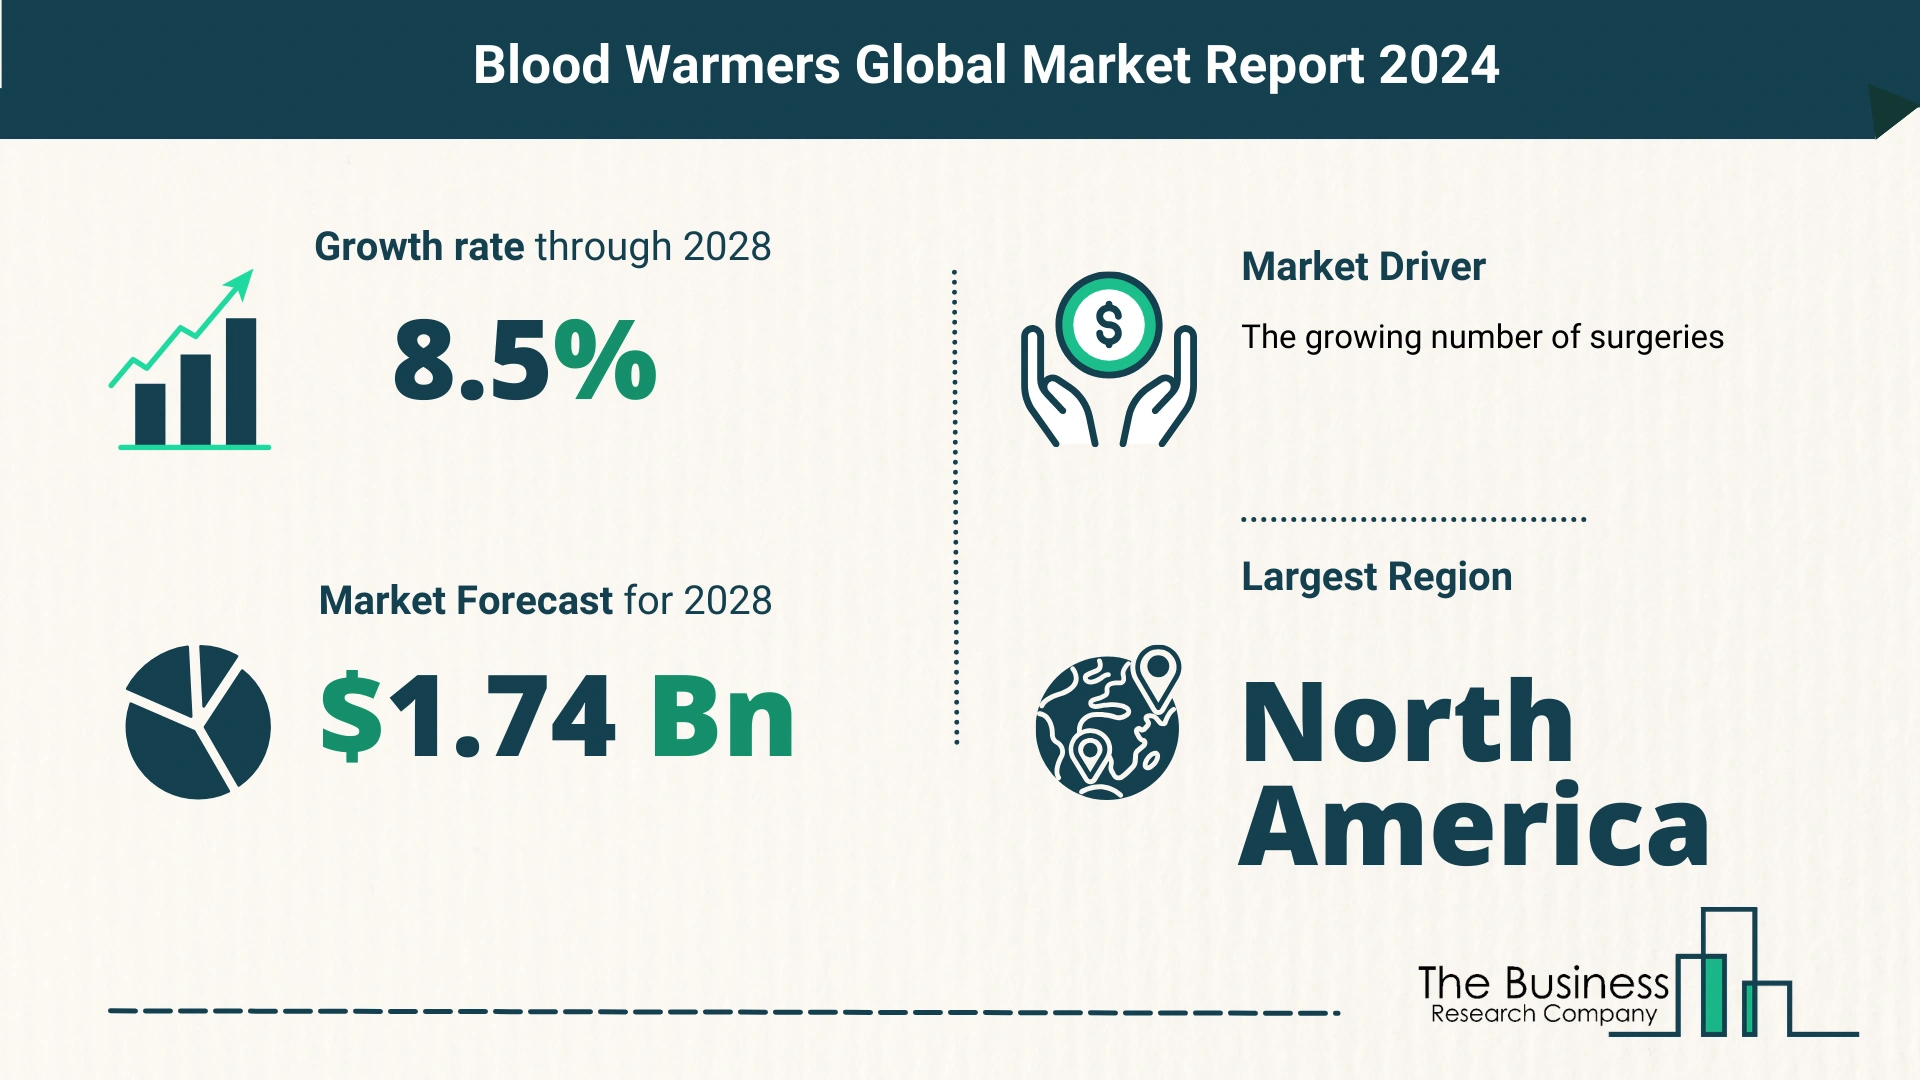 Global Blood Warmers Market Size